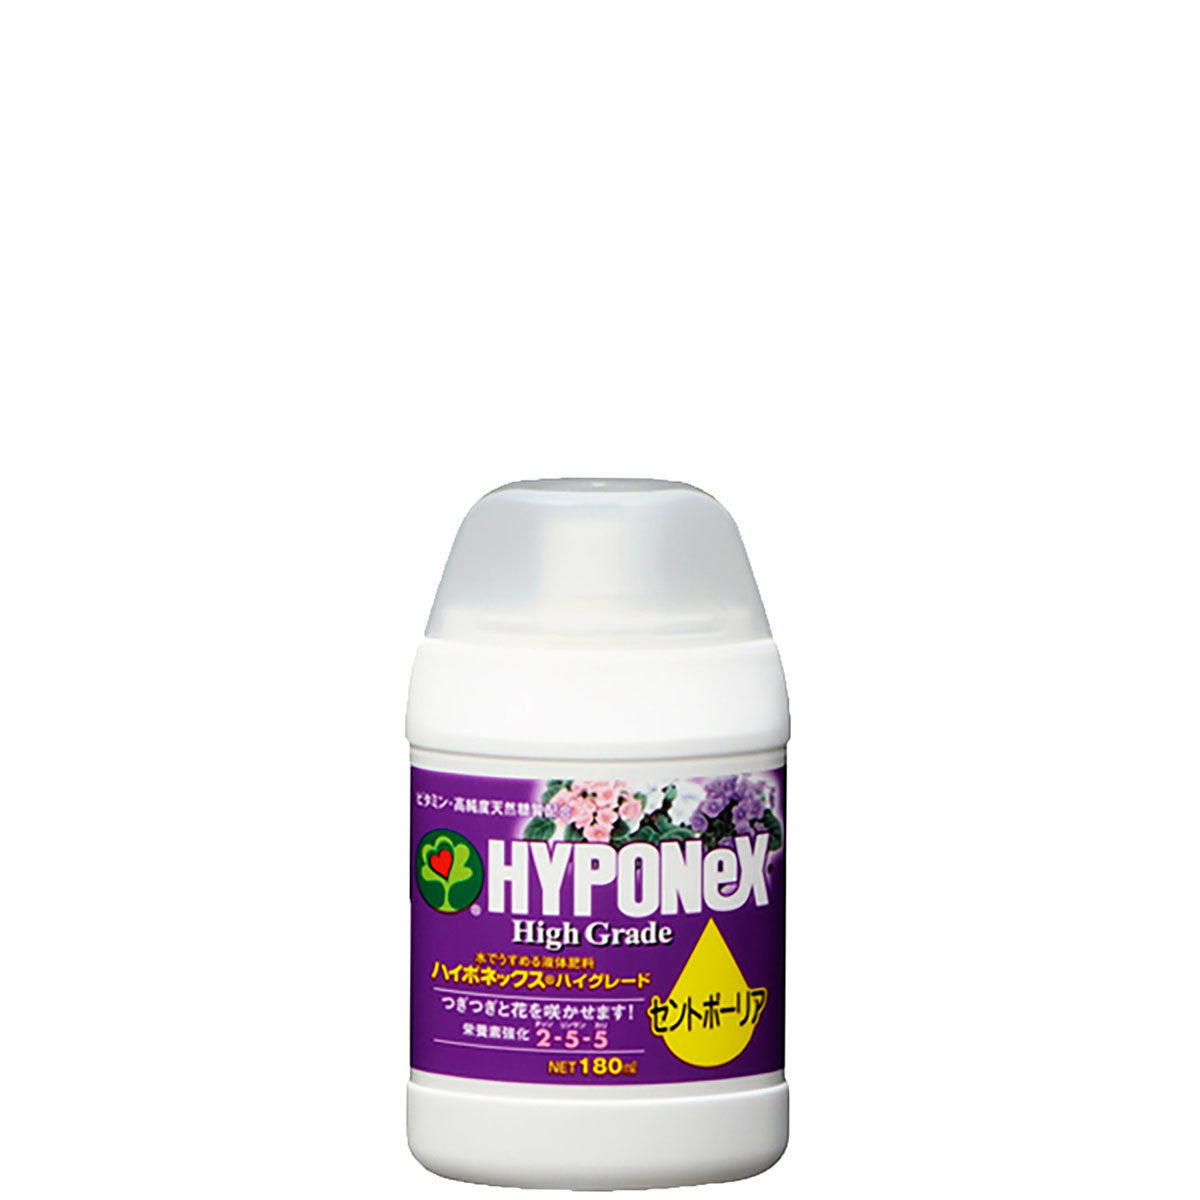 HYPONeX - 日本花寶 High Grade 2-5-5 紫蘿蘭及開花濃 縮液 園藝肥料 180ml 紫羅蘭